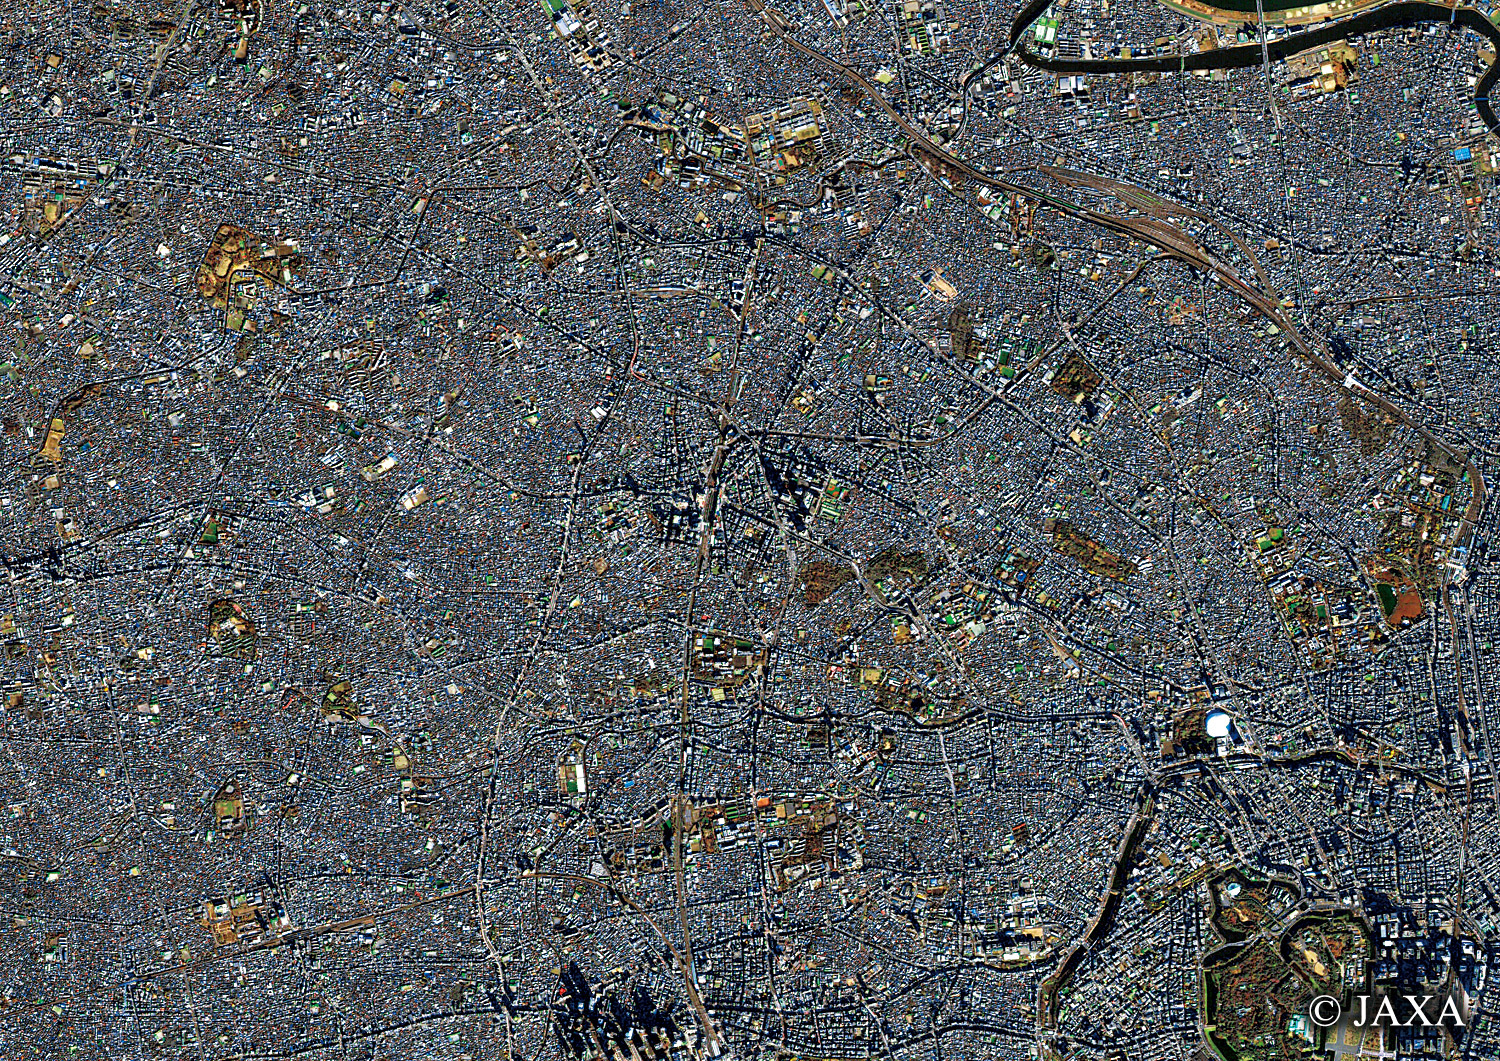 だいちから見た日本の都市 豊島区周辺:衛星画像